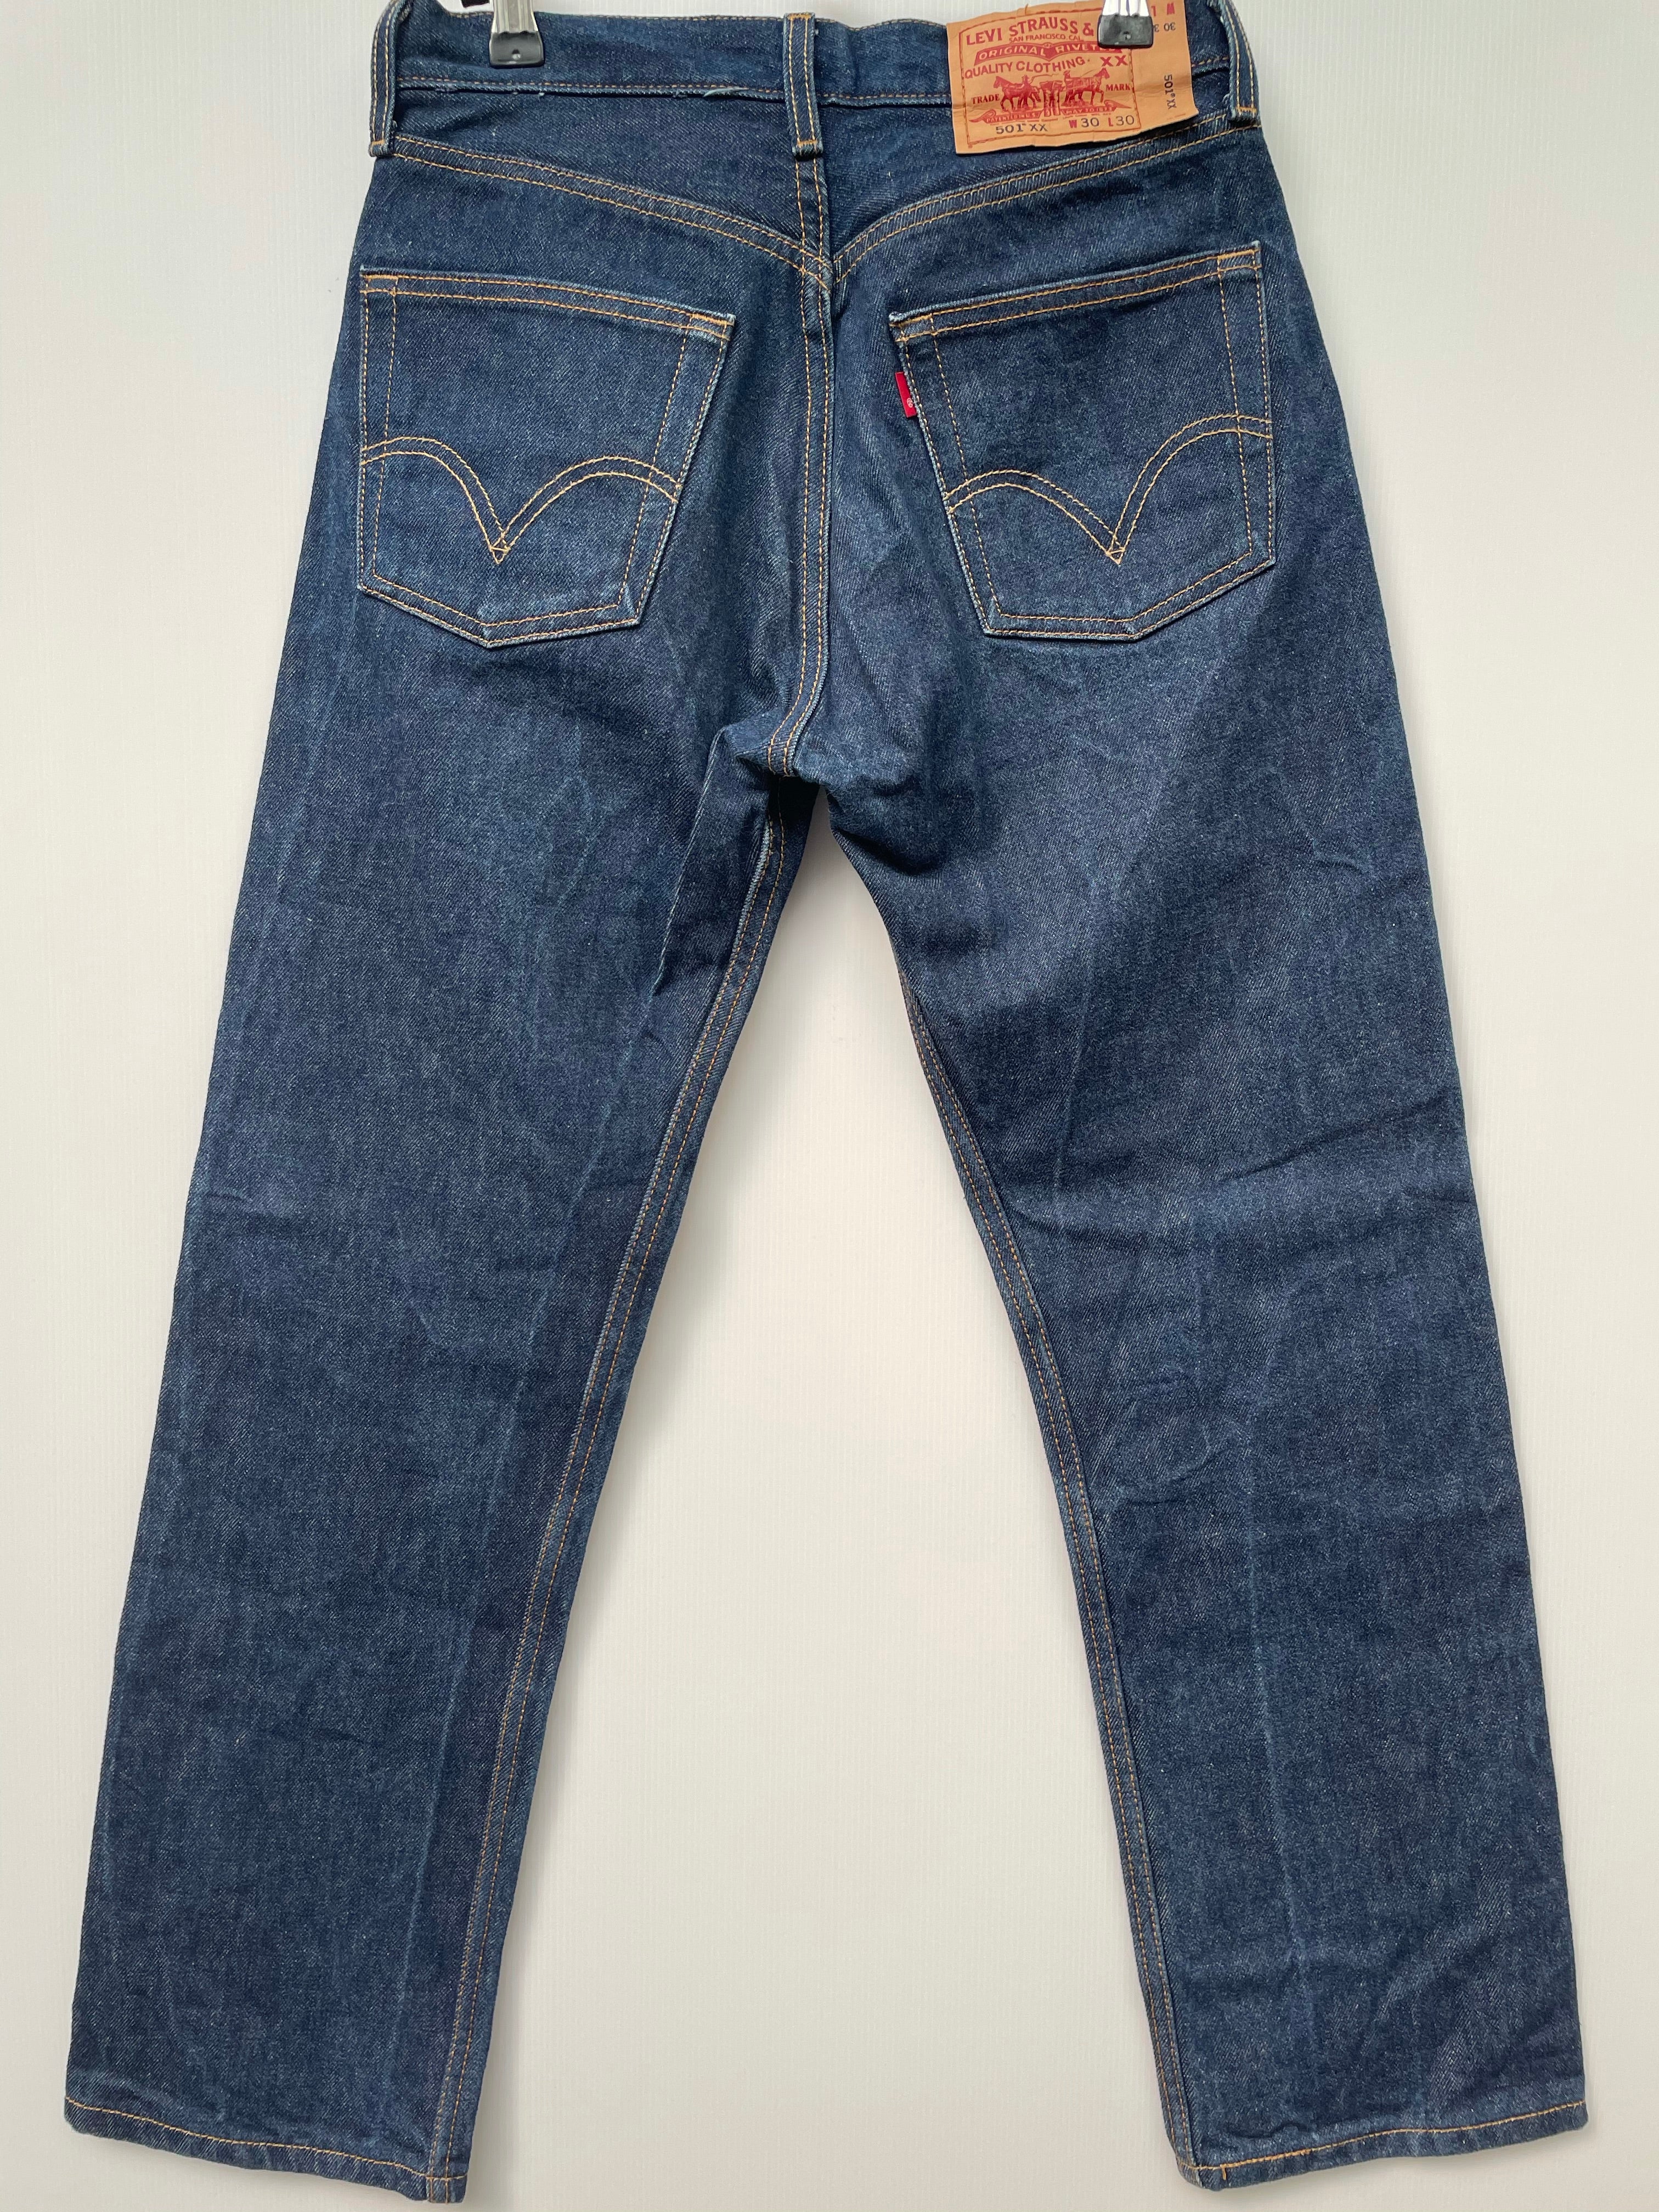 Original Levi Strauss 501 XX Jeans - Size W30 L30